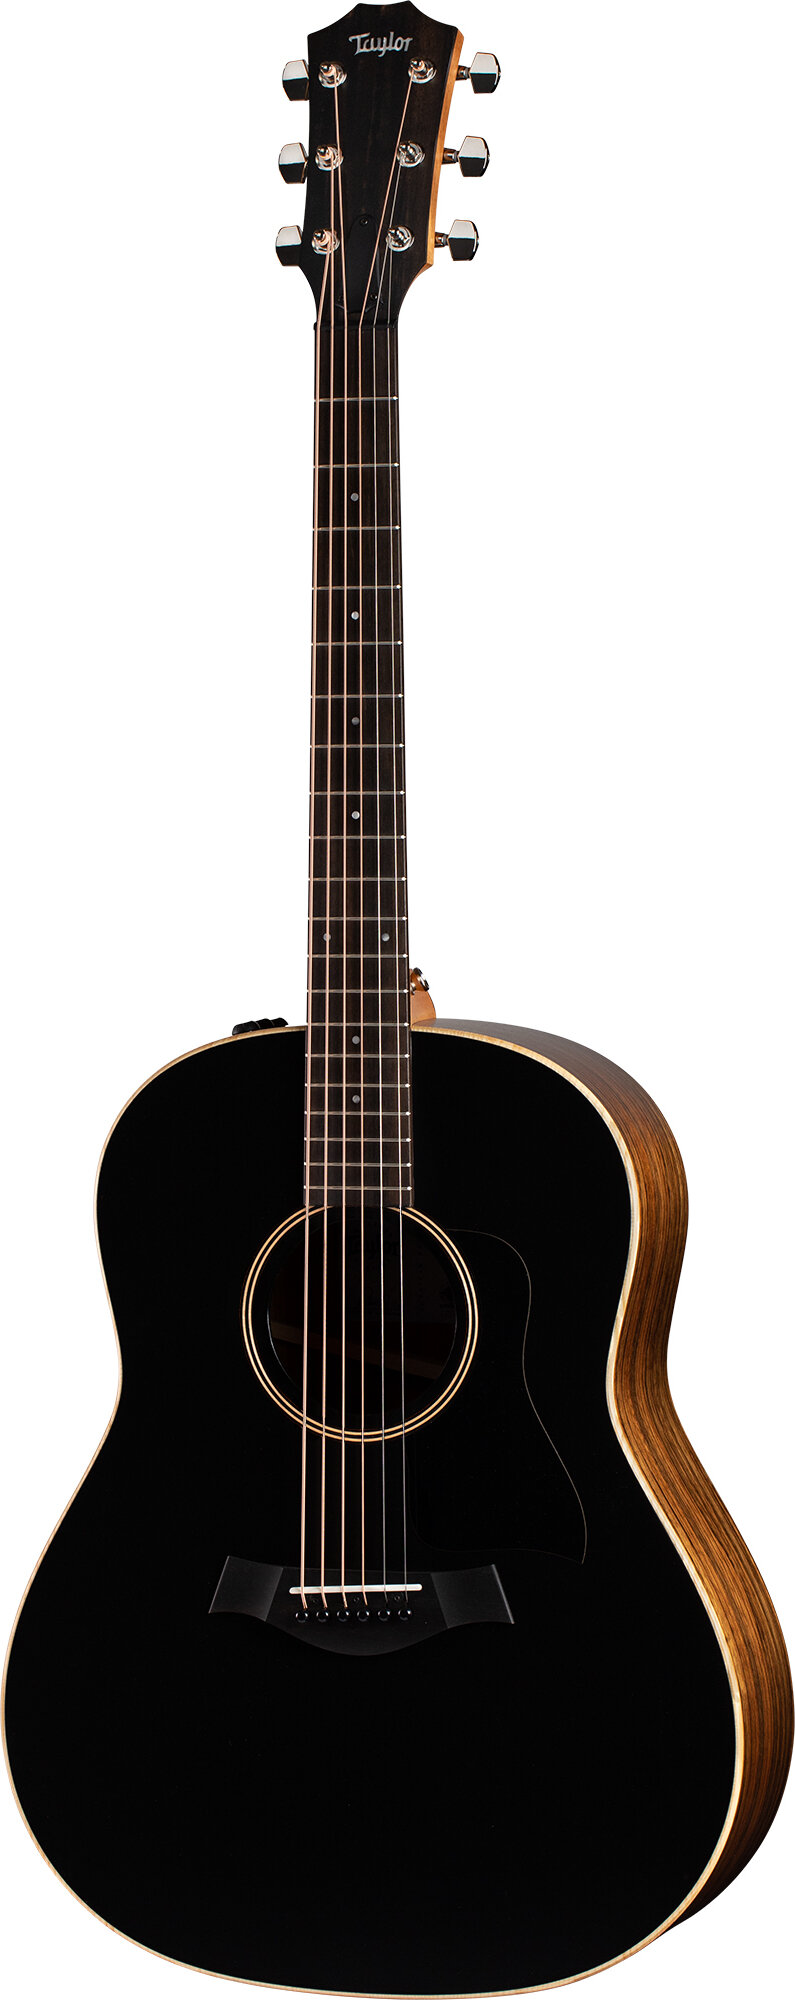 Taylor AD17e American Dream Grand Pacific Black -  Taylor Guitars, AD17e-Blk